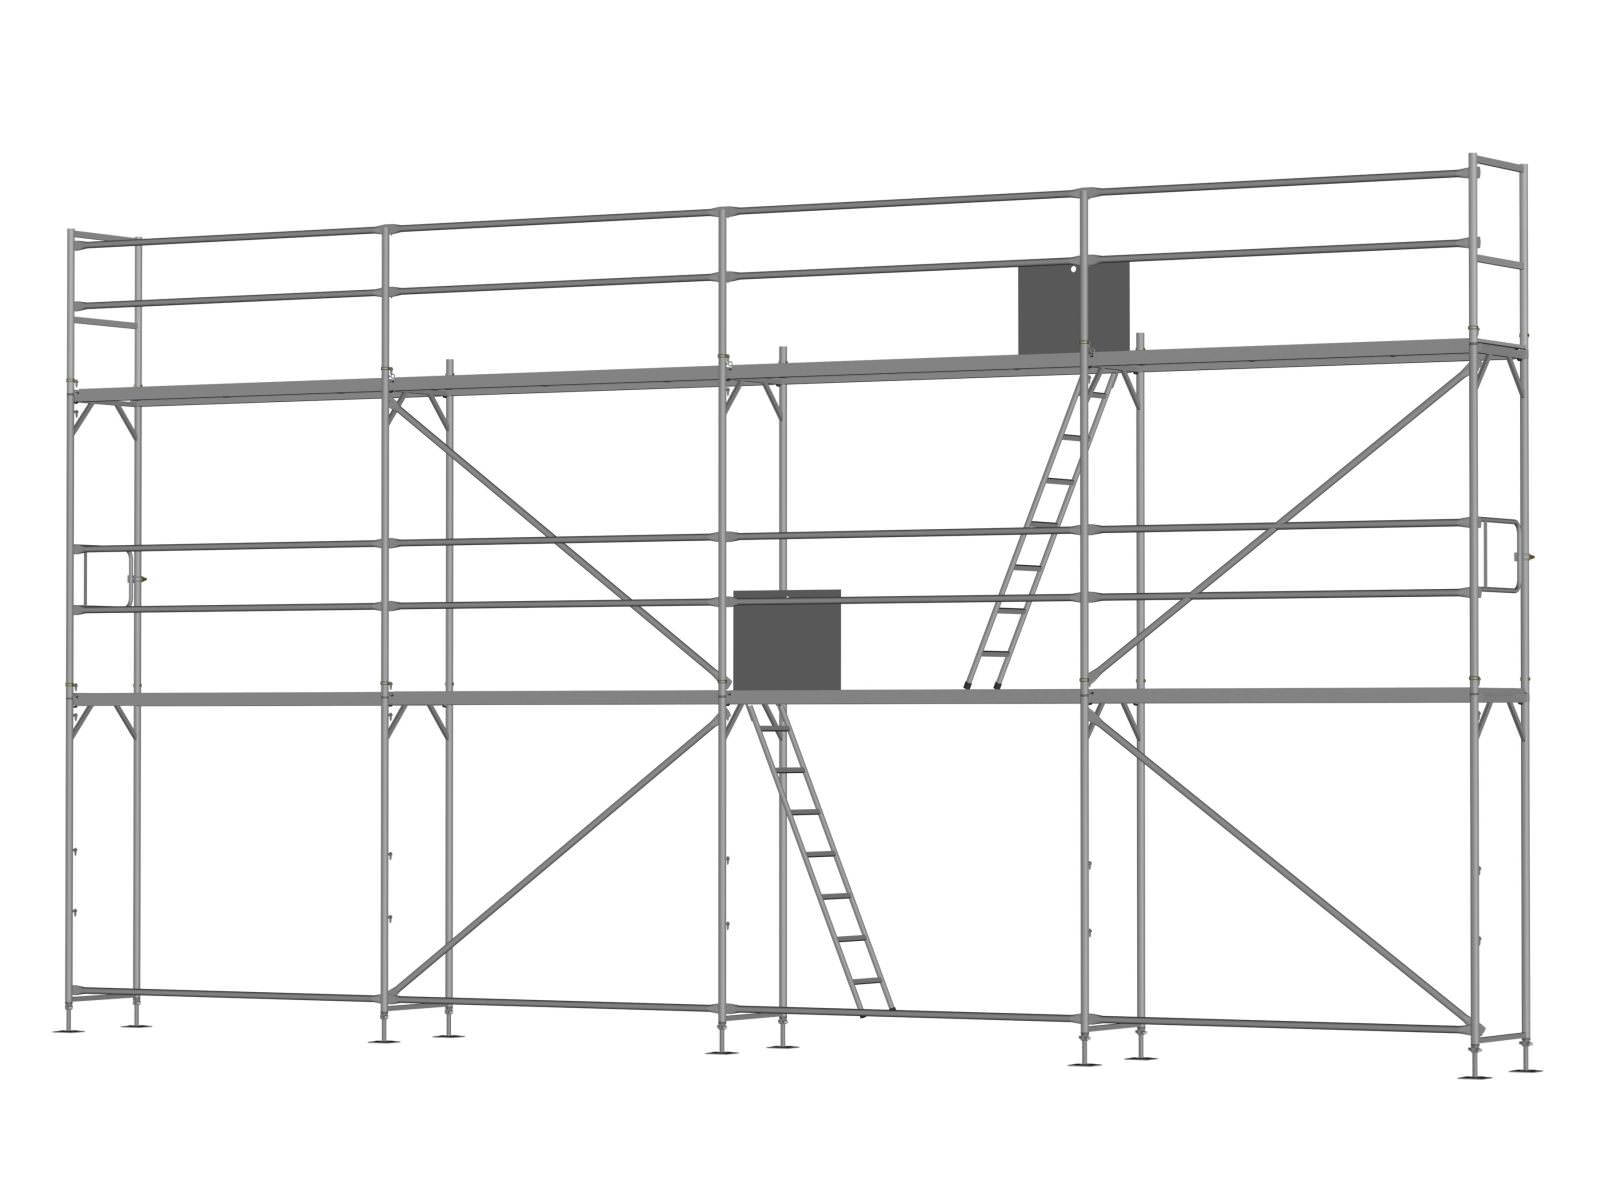 Stahl Traufseitengerüst 60 m² - 2,5 m Felder - 10 m lang - 6 m Arbeitshöhe, Grundgerüst inkl. Aufstieg / Befestigung